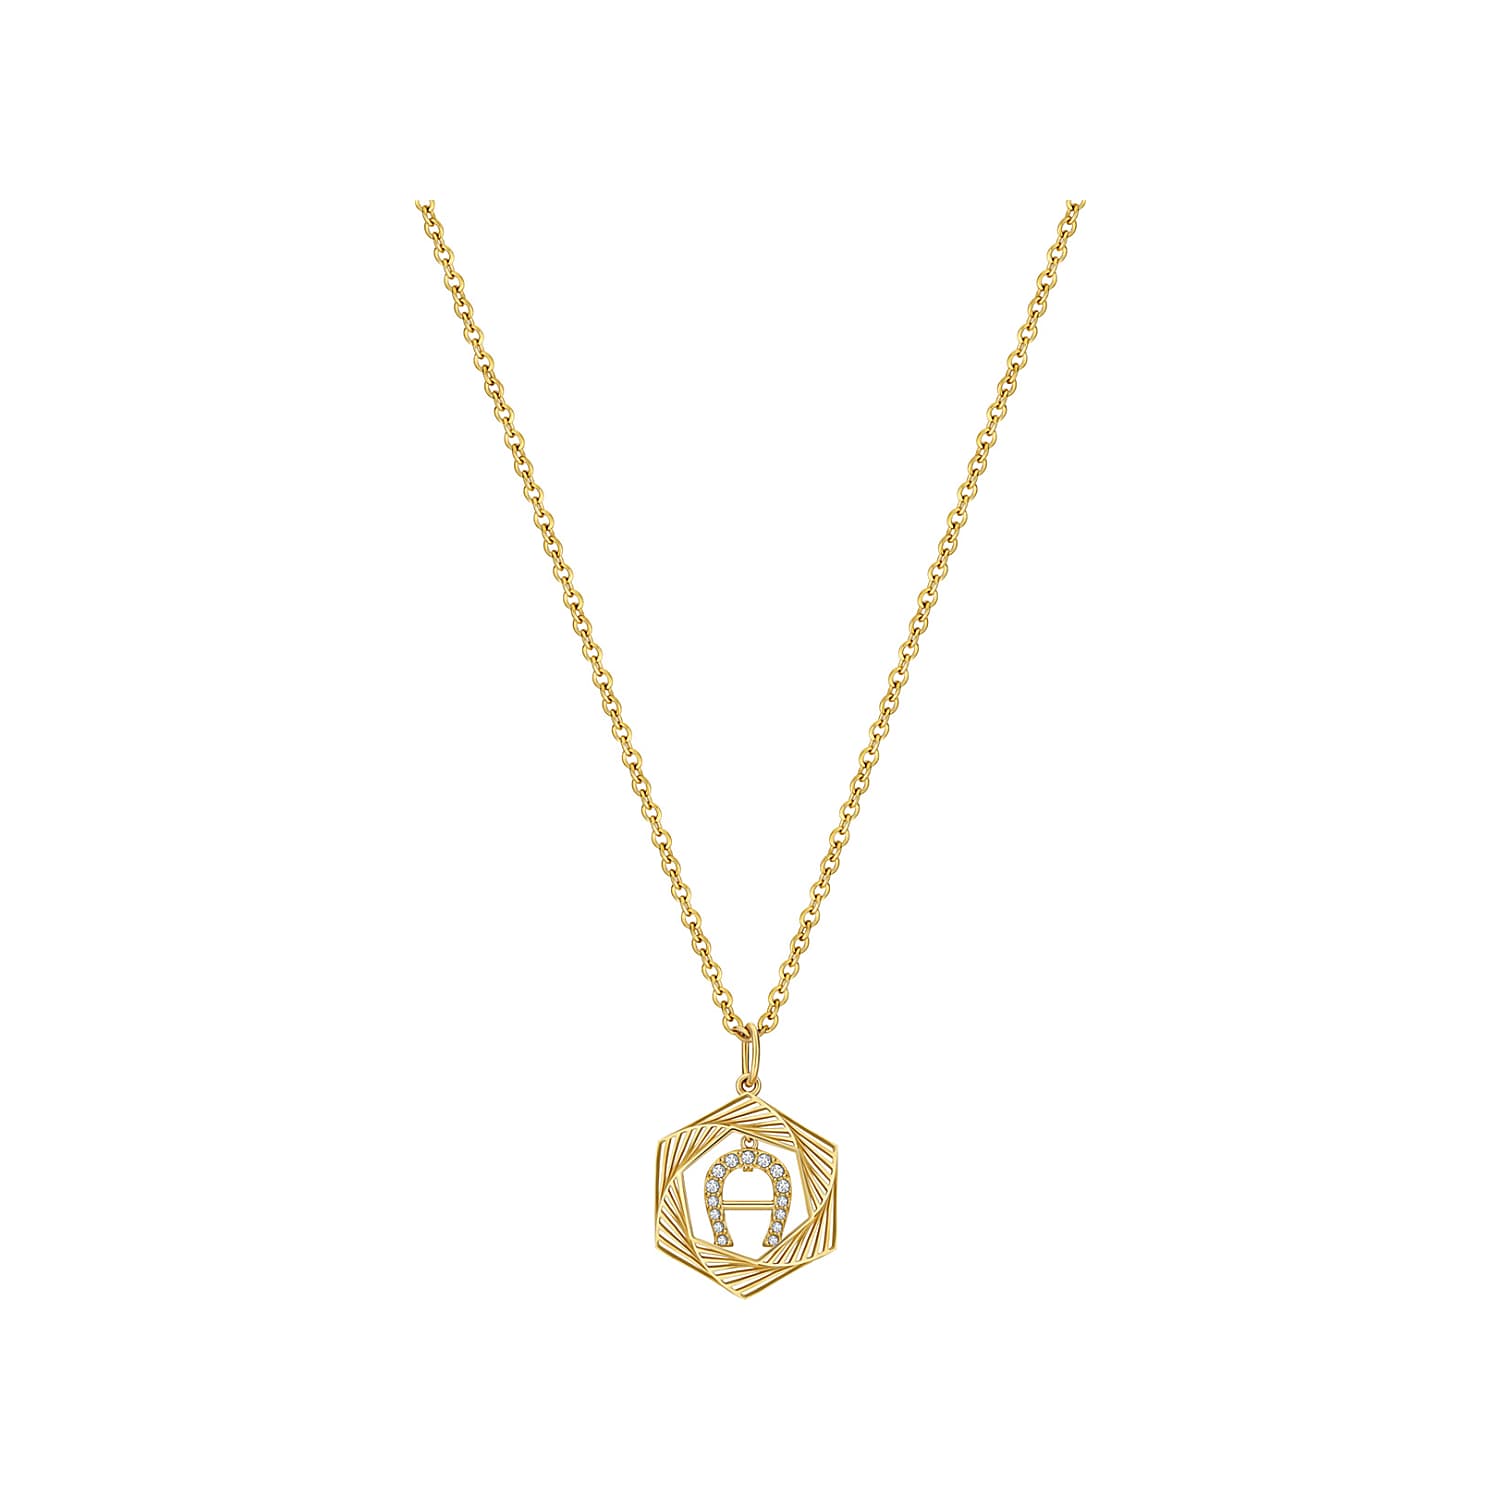 Halskette mit Hexagon und A-logo Gold